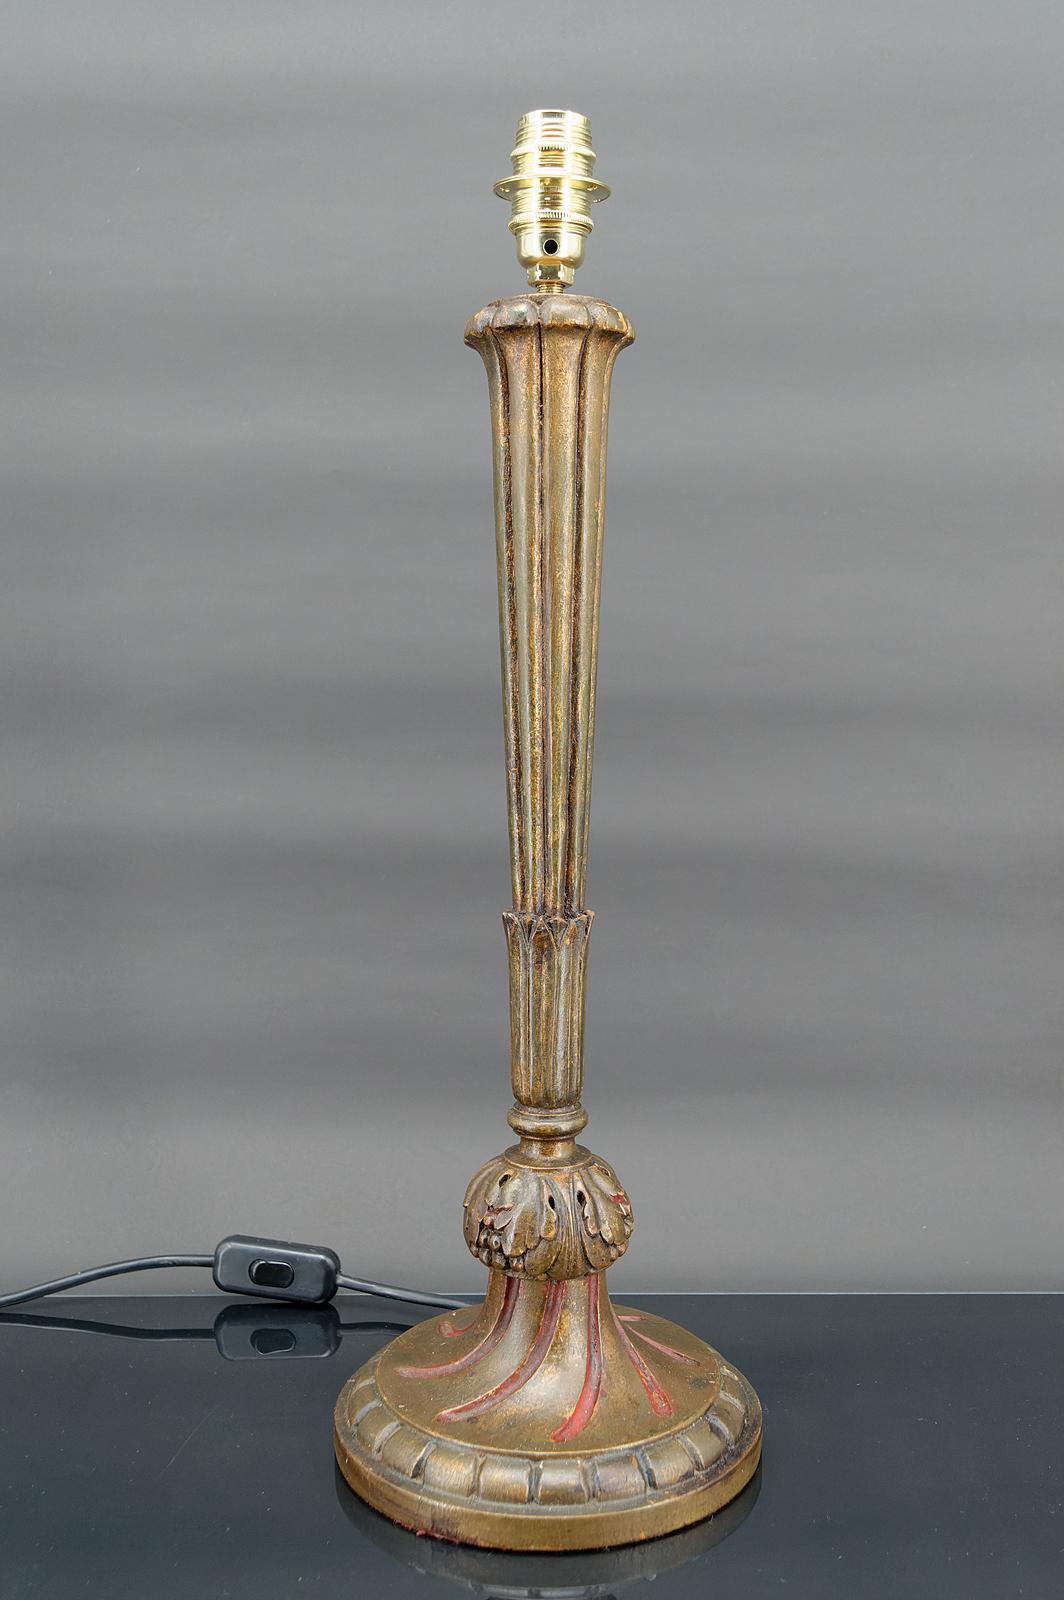 Grande lampe en bois doré.
Art déco.
France, vers 1920

En bon état, électricité OK.

Dimensions :
hauteur 51 cm
diamètre 18 cm